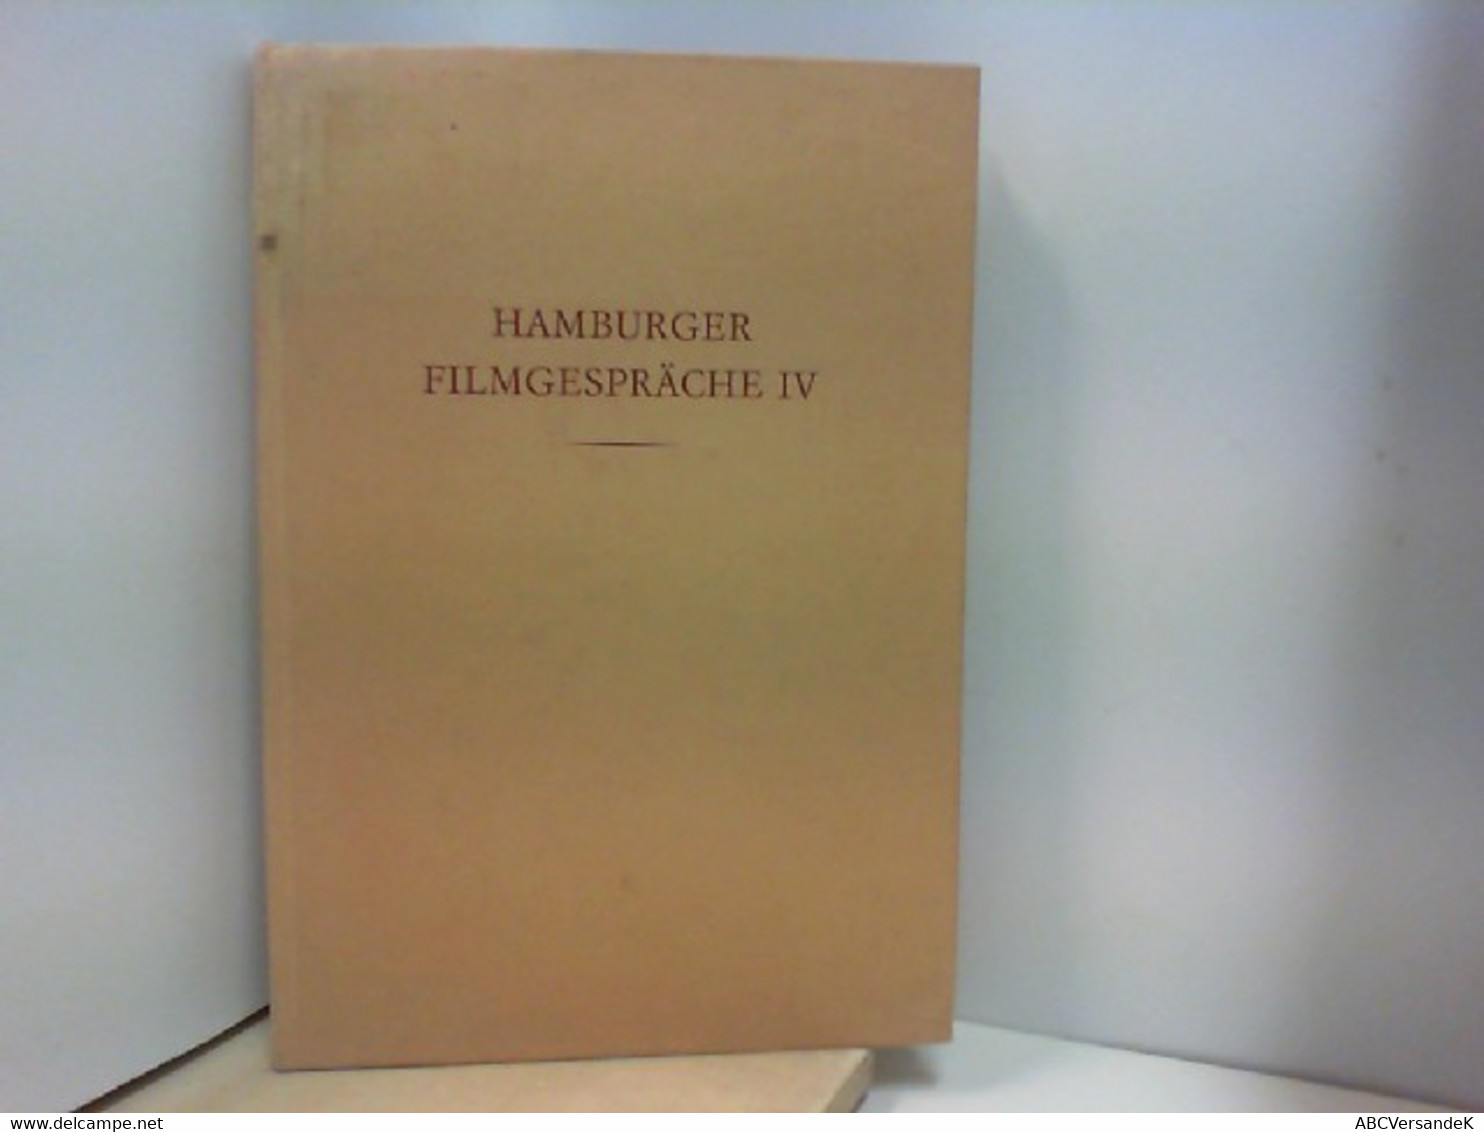 Hamburger Filmgespräche IV - Cine